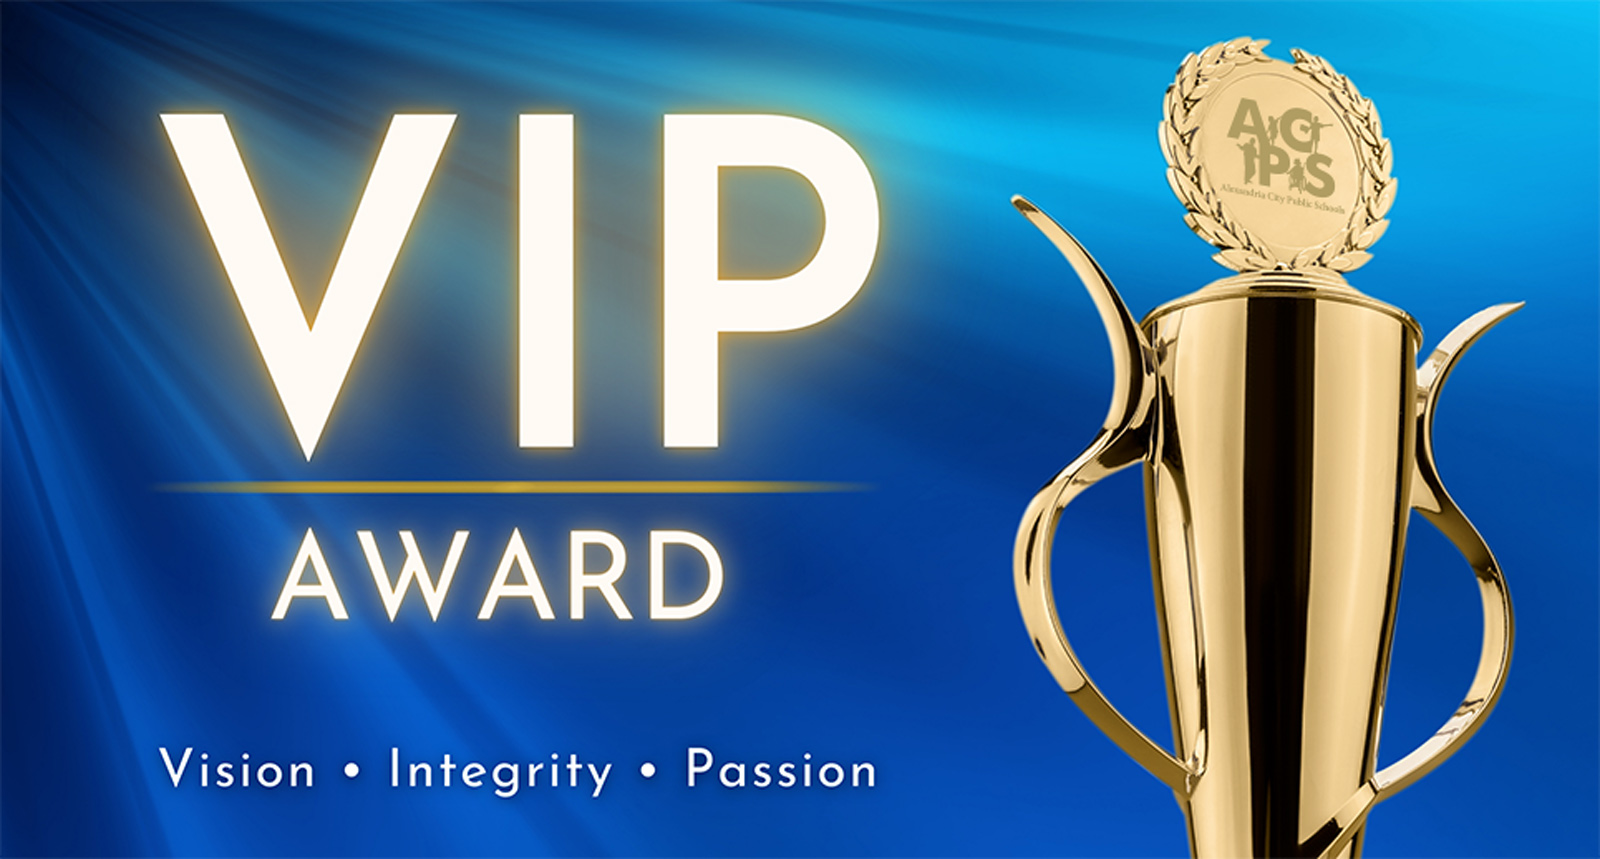 VIP Award: Vision, Integrity, Passion